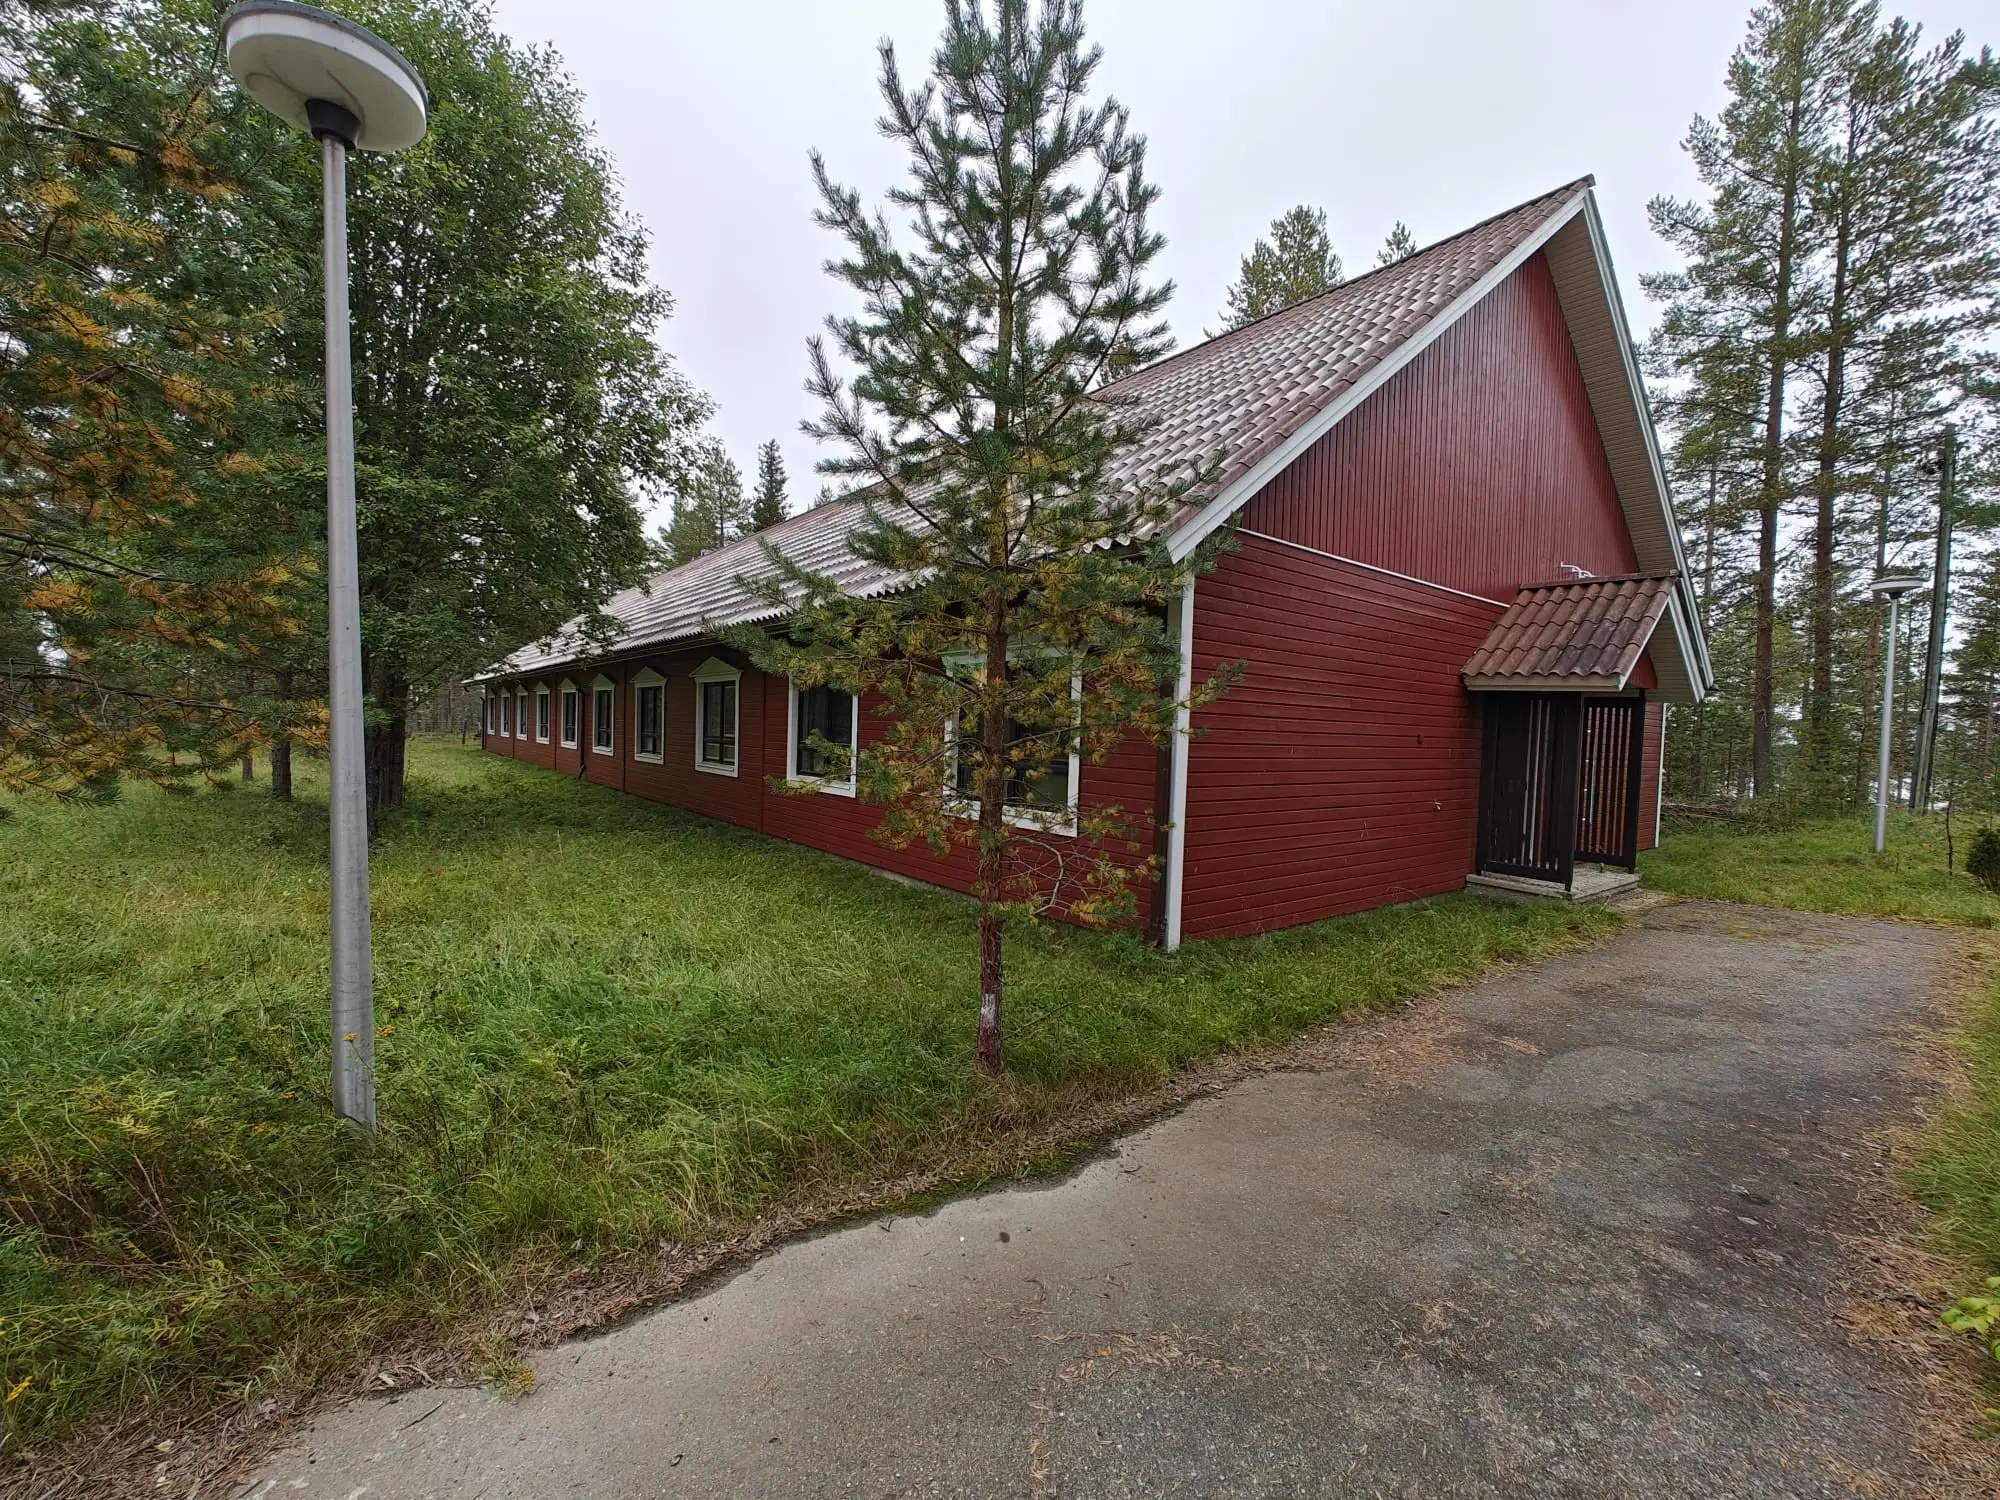 PARTNERVEILING - Uniek gelegen vakantieresort in Livaara - Finland